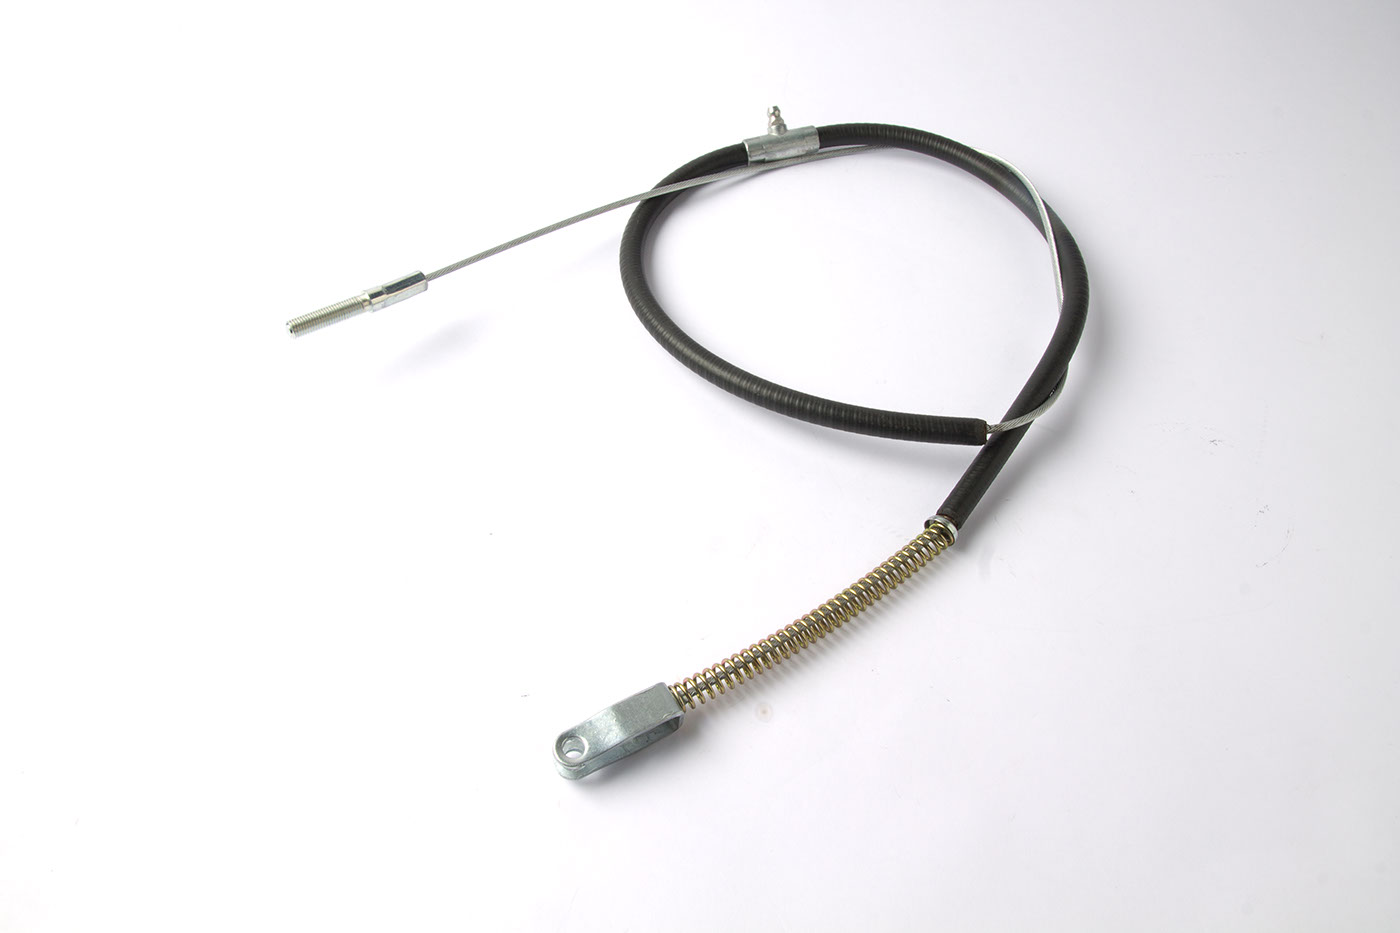 Handbremsseil
Handbrake cable
Câble de frein à main
Cable d